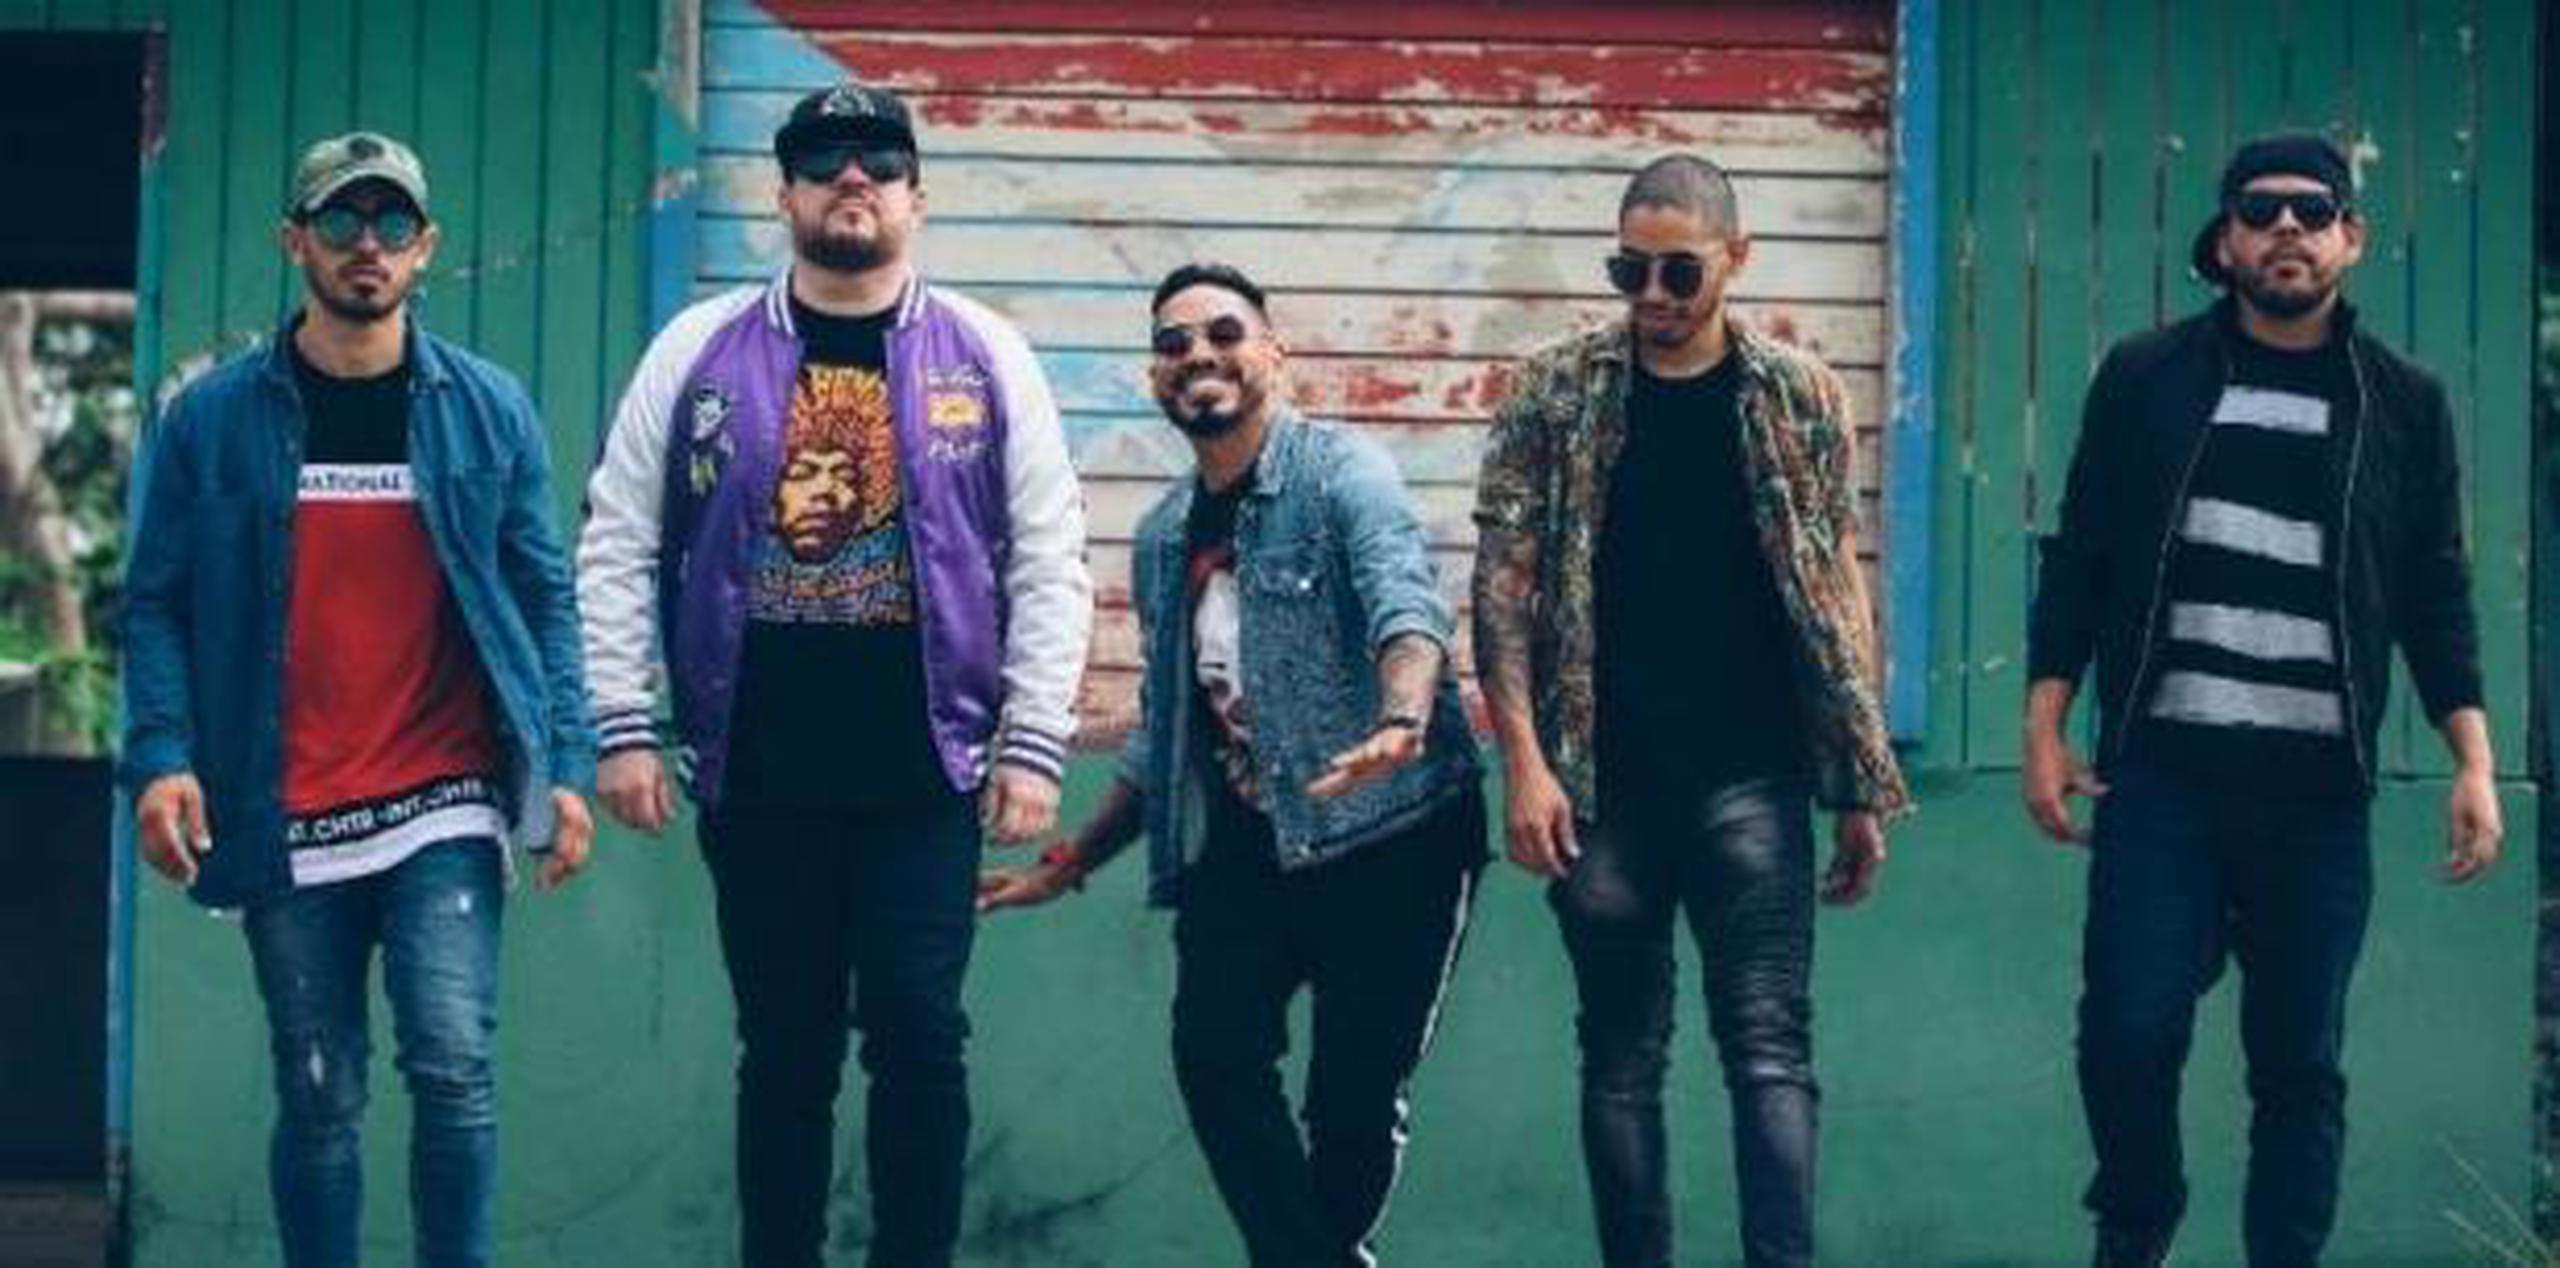 La banda Algarete se originó en el 1993, en Ponce, con un cantante y tres músicos. (Suminsitrada)